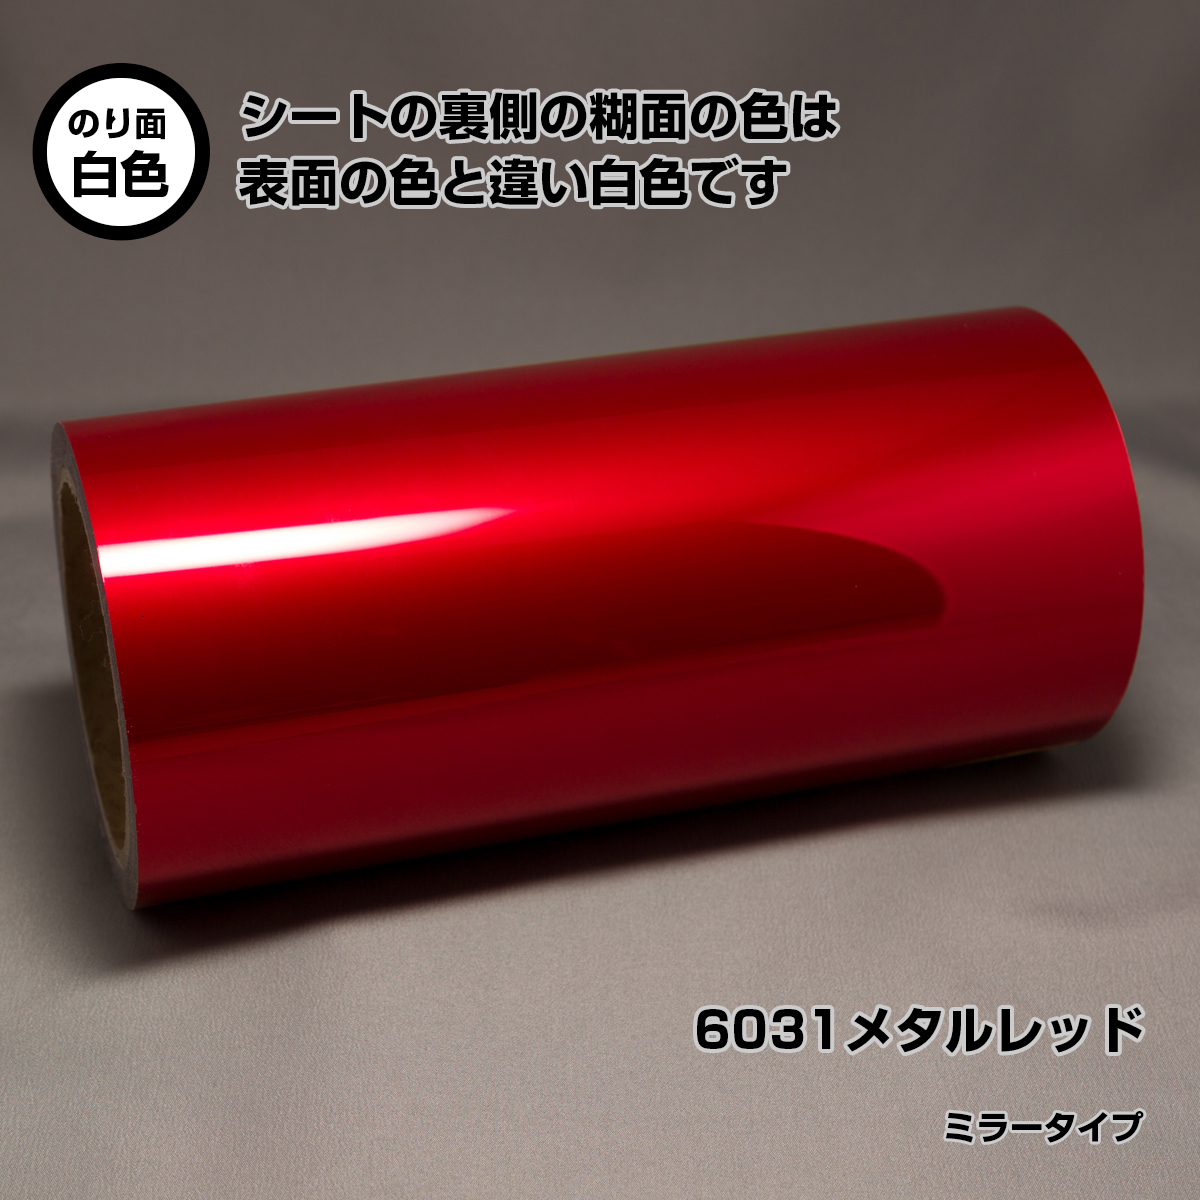 29cm×5m 6031 metal красный наружный атмосферостойкий долгое время зеркало модель маркировка сиденье разрезной плёнка стерео kaSX-12 SV-12 SX-15 SV-15